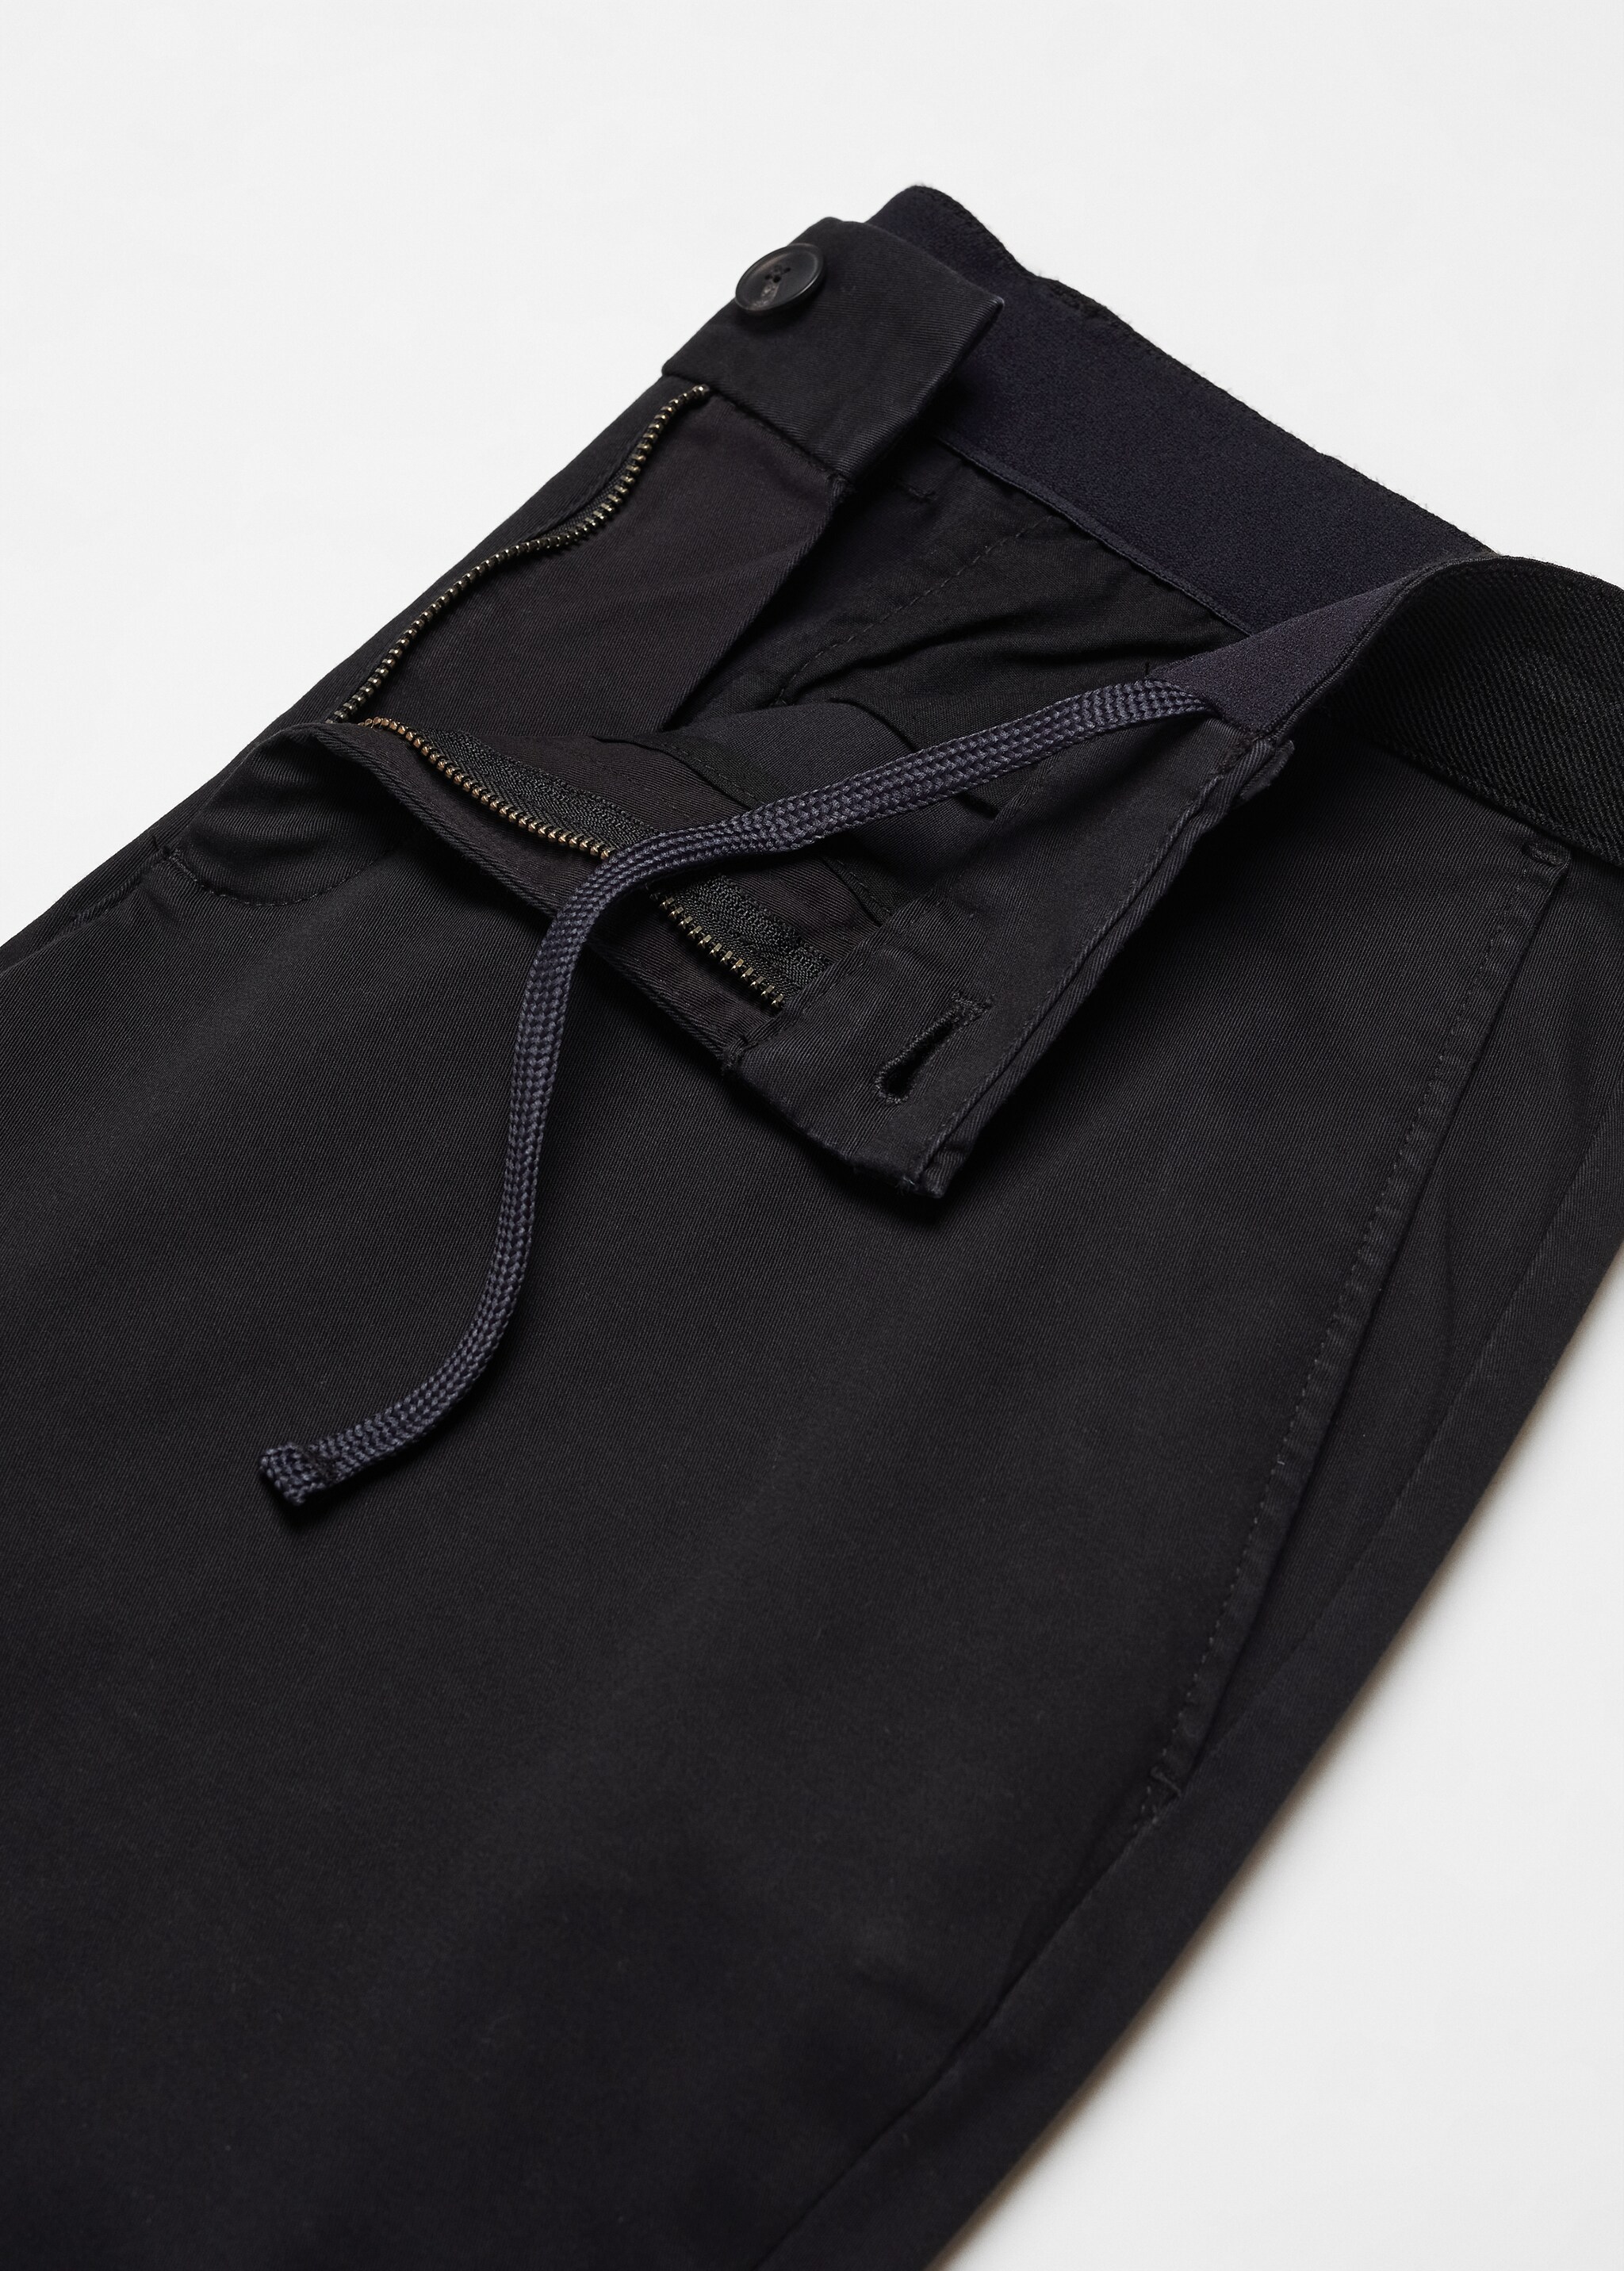 Spodnie bawełniane o fasonie tapered cropped - Szczegóły artykułu 8